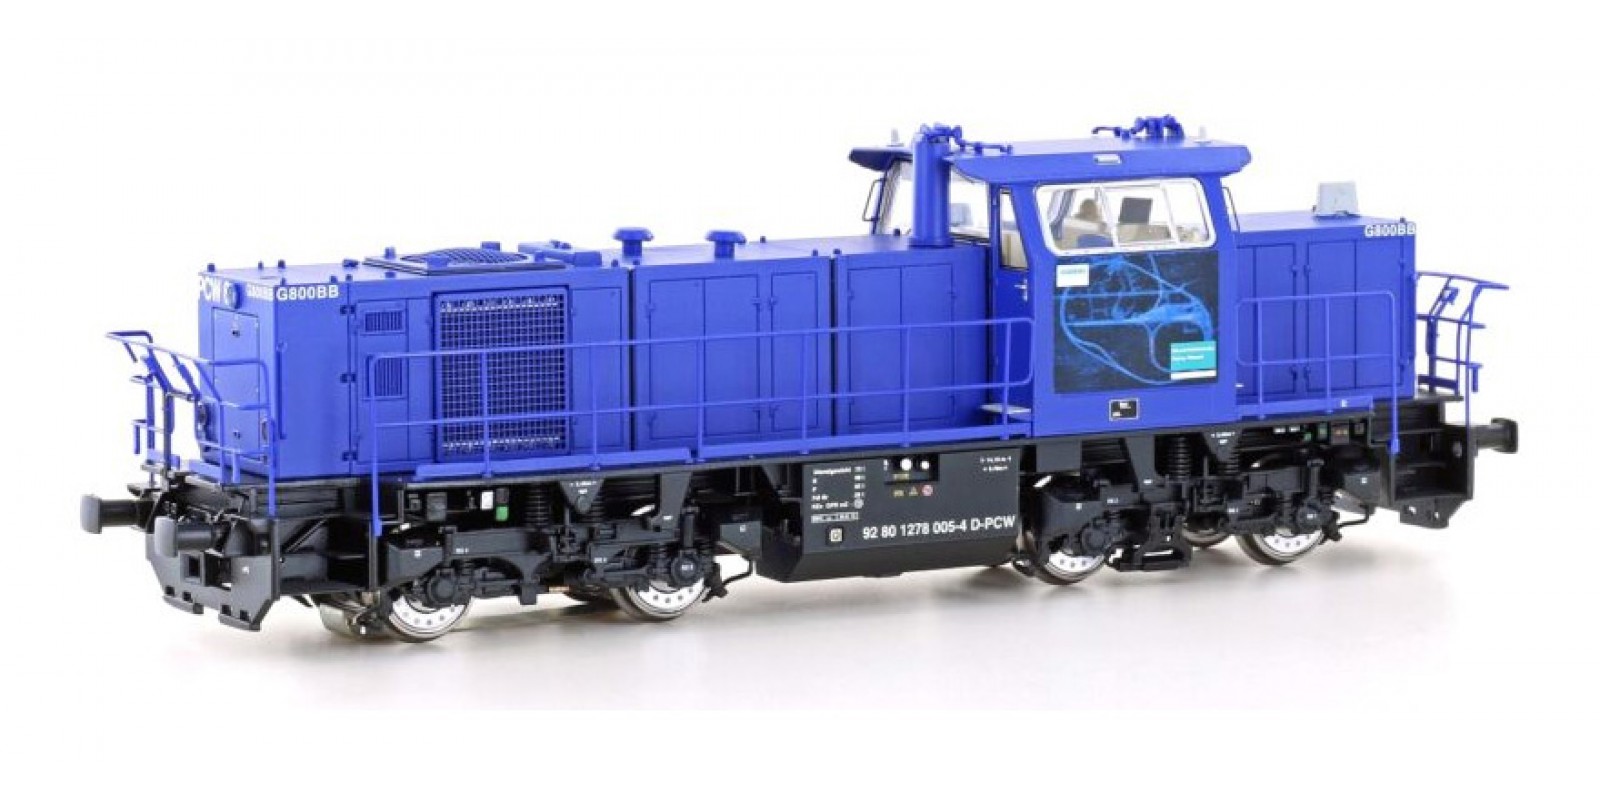 JA20752 Gauge H0 Diesel locomotive MaK G800 BB "Siemens factory locomotive", epoch VI, DCC with sound